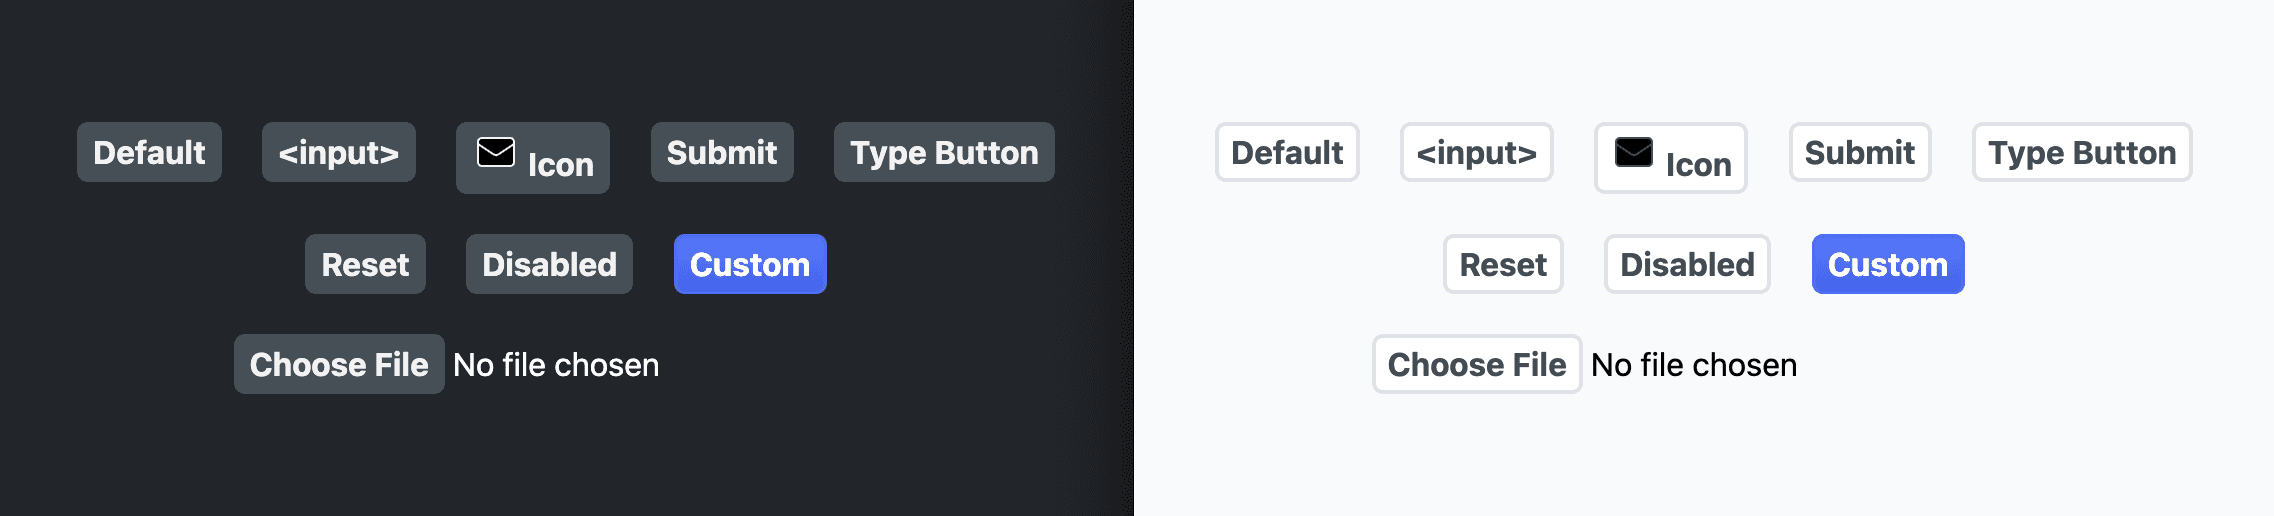 Снимок экрана, показывающий кнопки после применения предыдущих стилей.